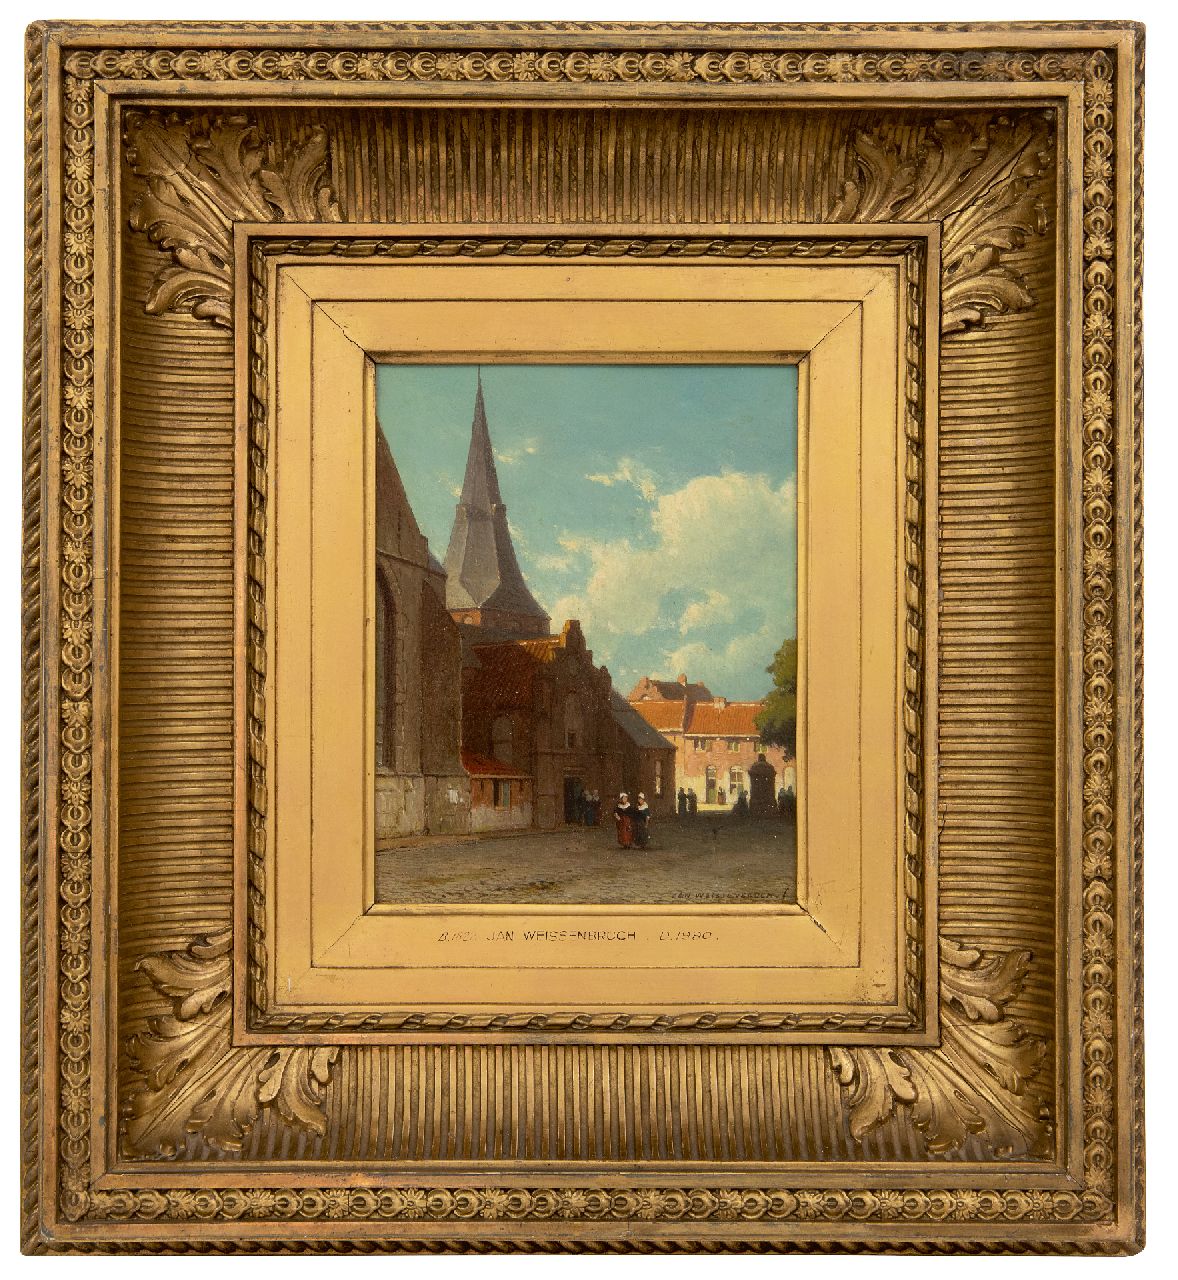 Weissenbruch J.  | Johannes 'Jan' Weissenbruch | Schilderijen te koop aangeboden | Wandelende figuren in een zonnig stadje, olieverf op paneel 19,0 x 14,9 cm, gesigneerd rechtsonder